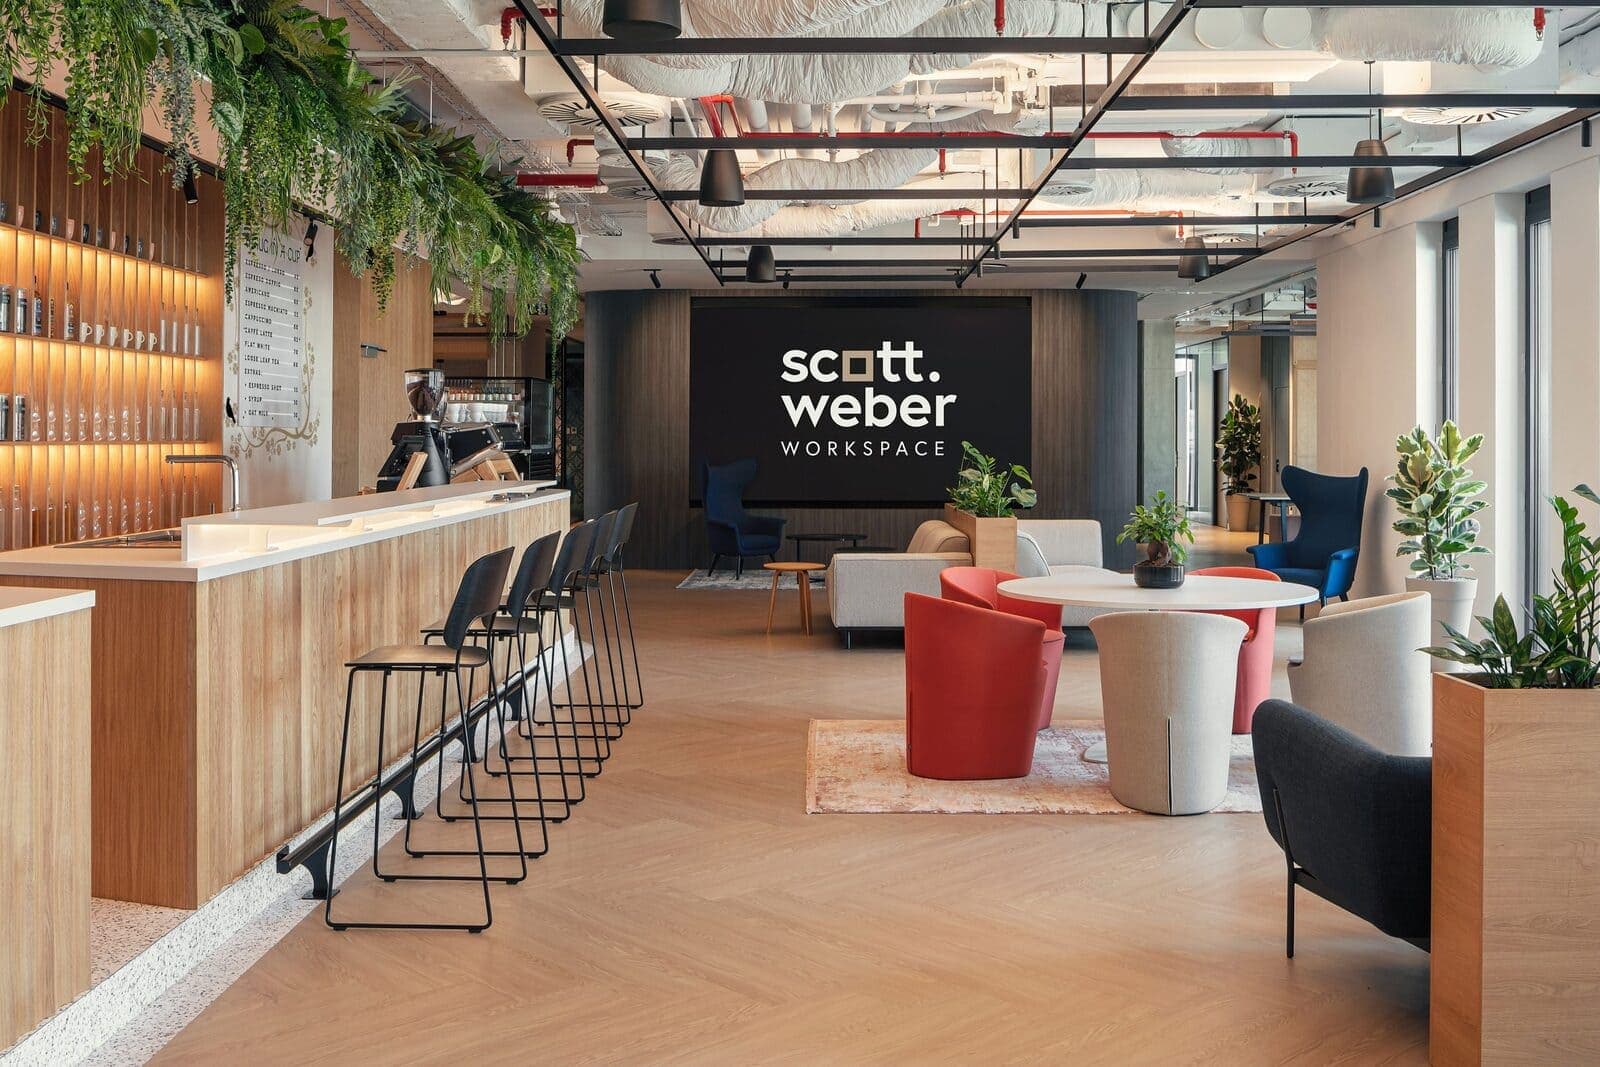 Scott.Webber Workspace: виртуальный офис в одном из самых престижных мест Праги